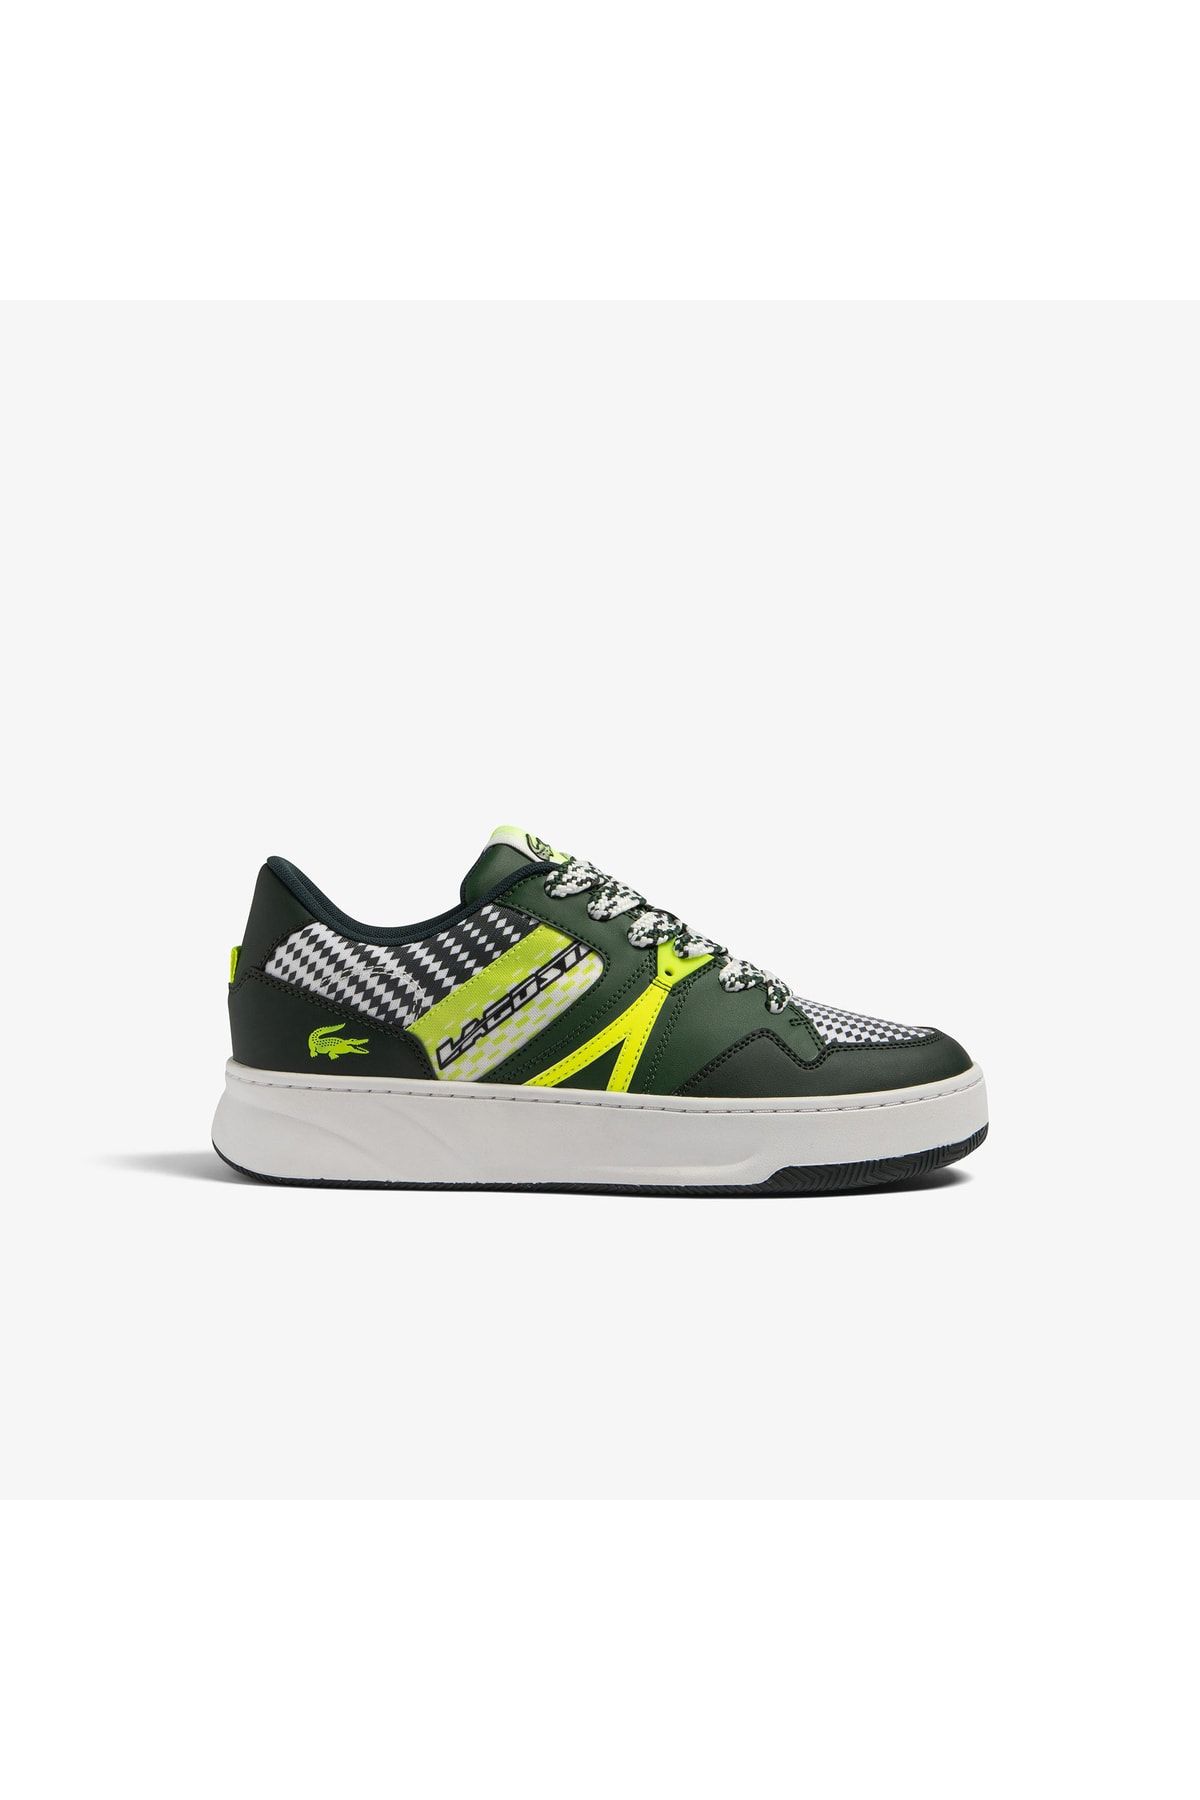 Lacoste L005 Erkek Yeşil Sneaker